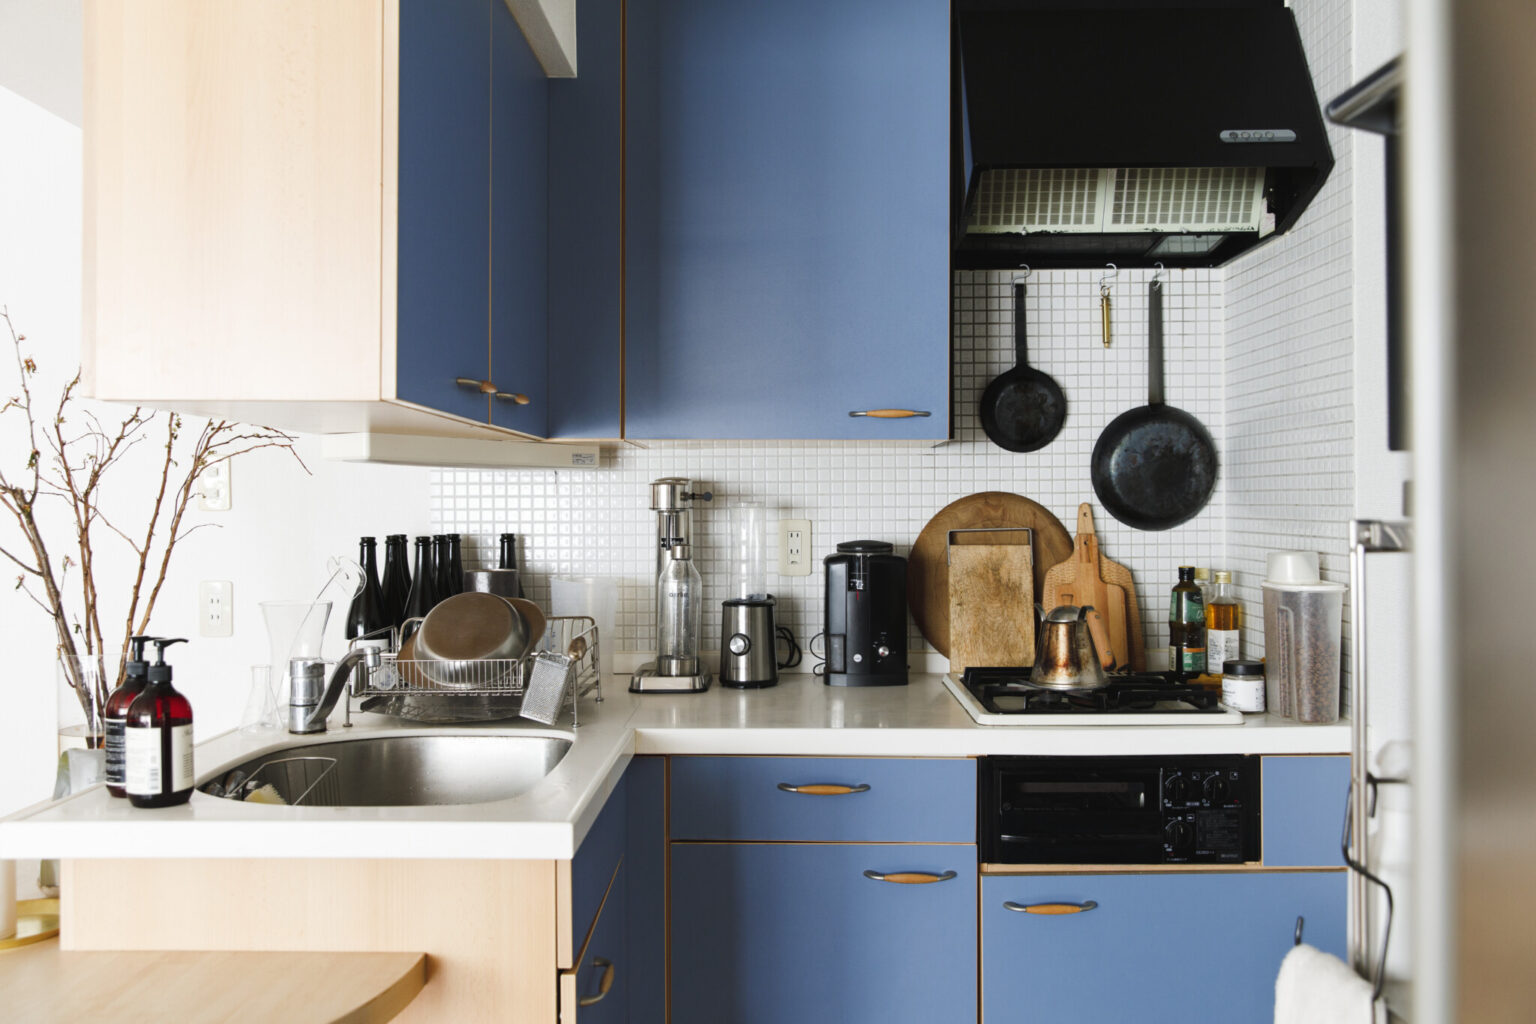 クラシカルなブルーのL型キッチンでは、テレビを観ながら料理をするのがお決まり。キッチンアイテムはウッド系やステンレスなど、長く使えるデザインで統一。必要最低限のものをすっきり収納している。